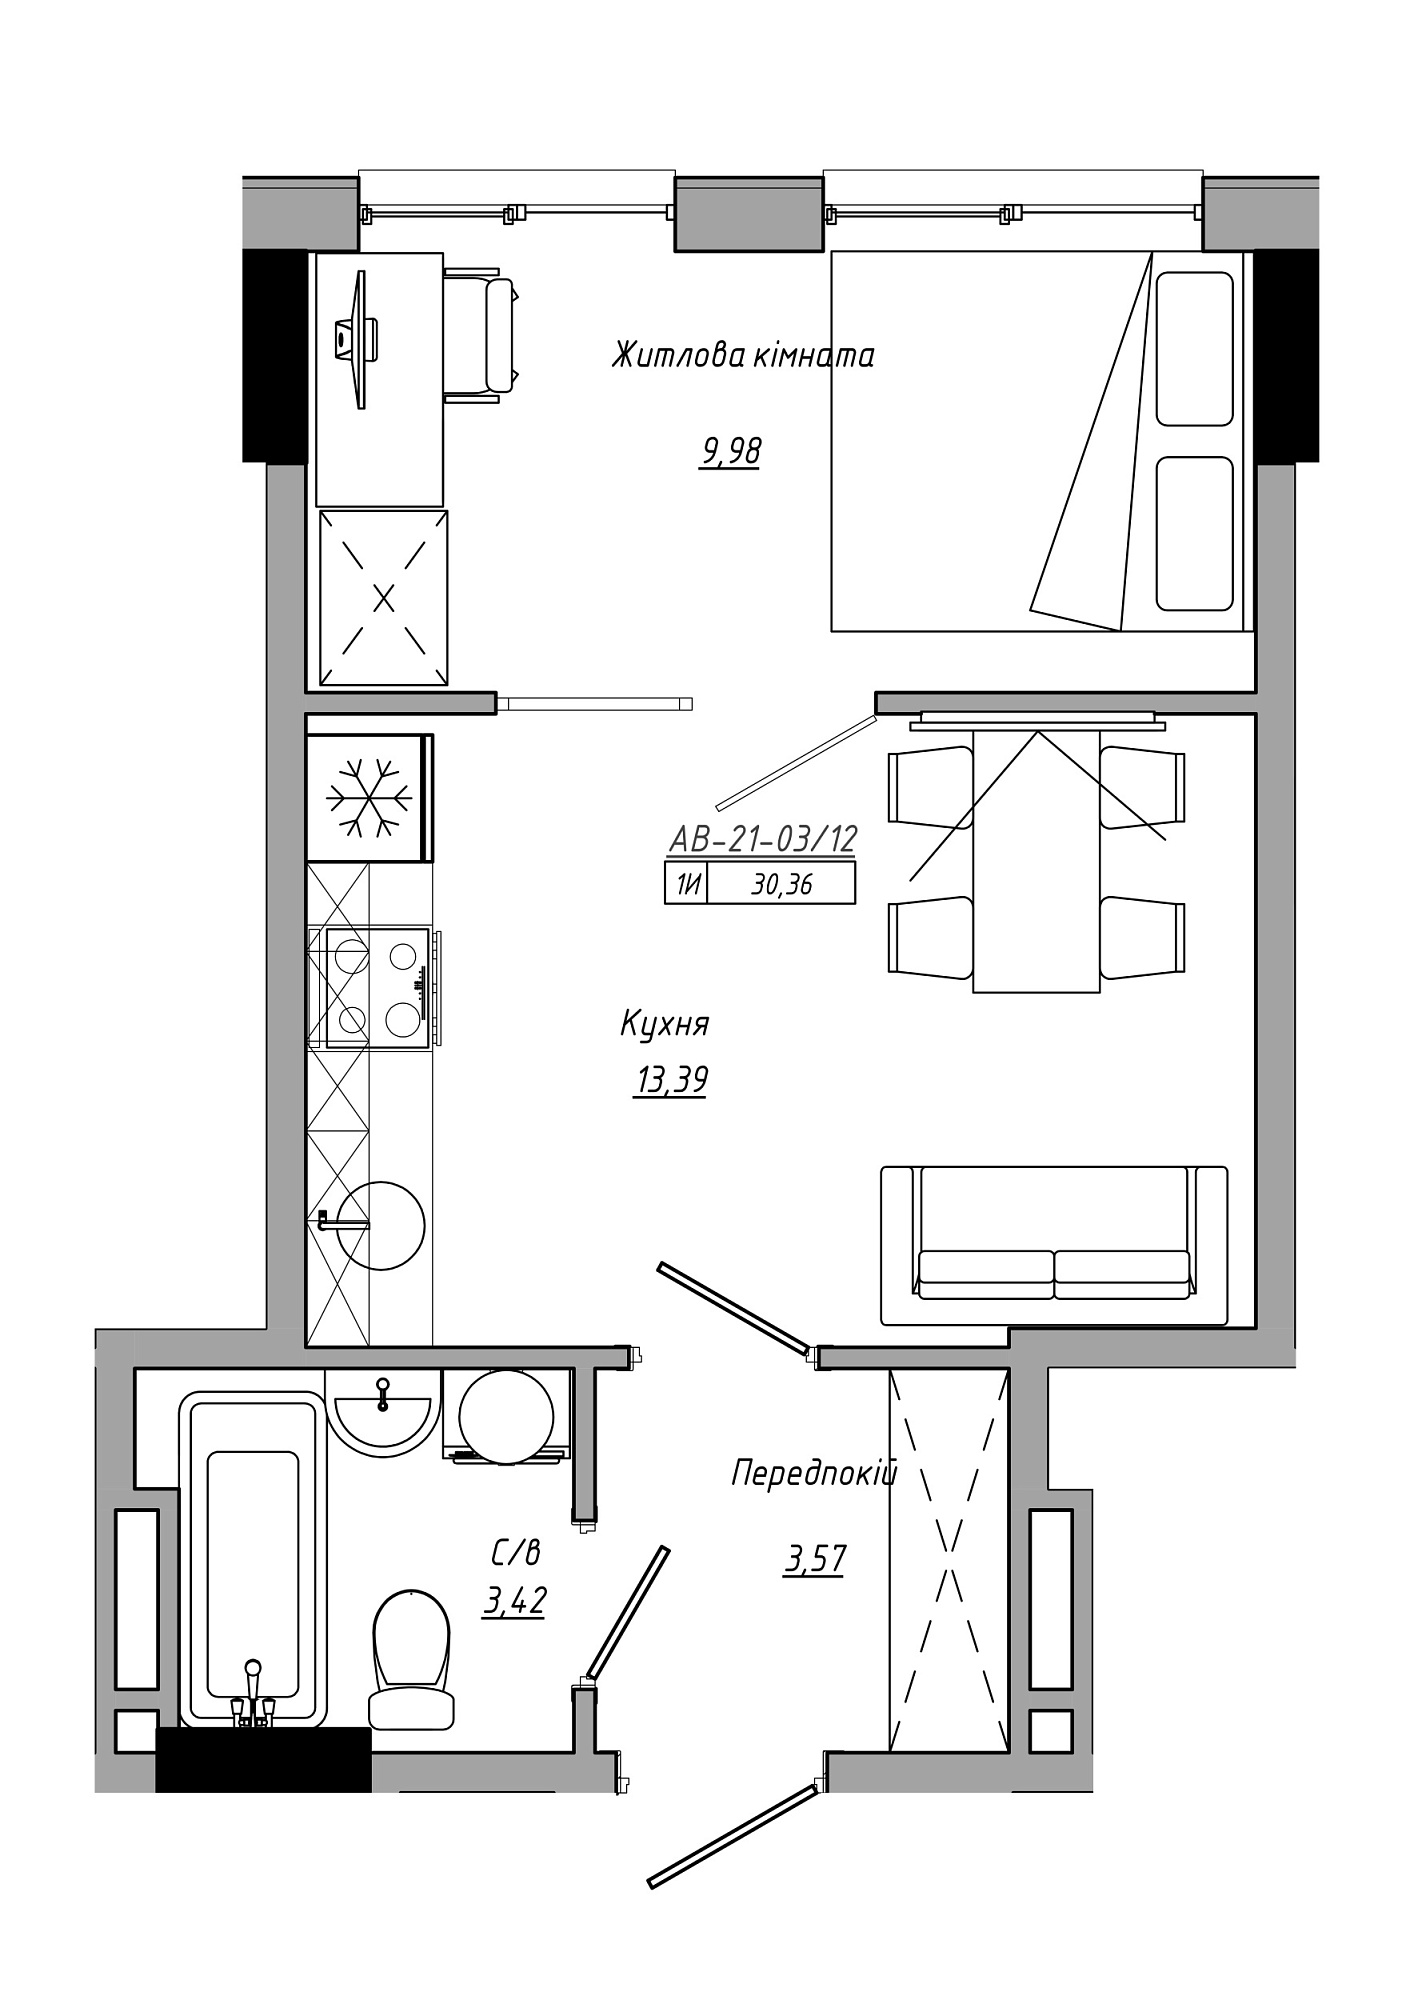 Планування 1-к квартира площею 30.36м2, AB-21-03/00012.